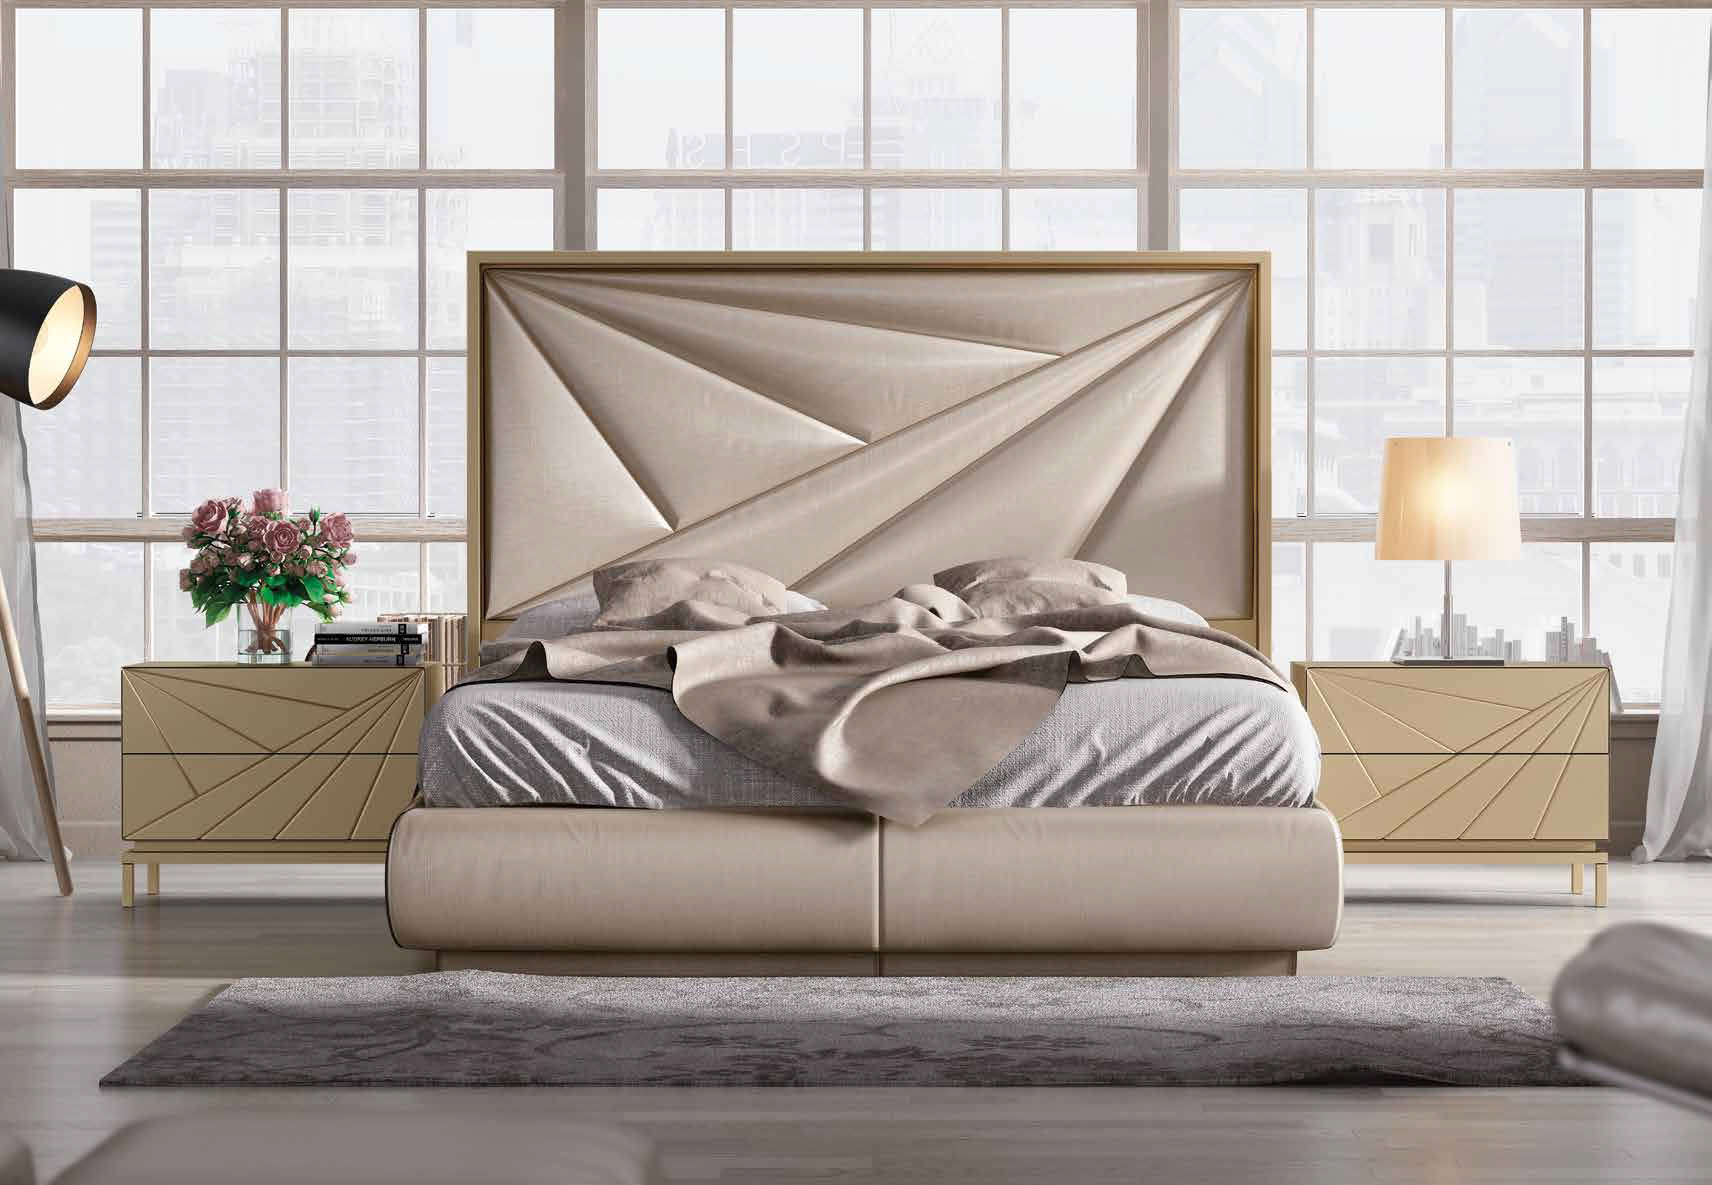 Brands Franco Furniture Avanty Bedrooms, Spain DOR 17